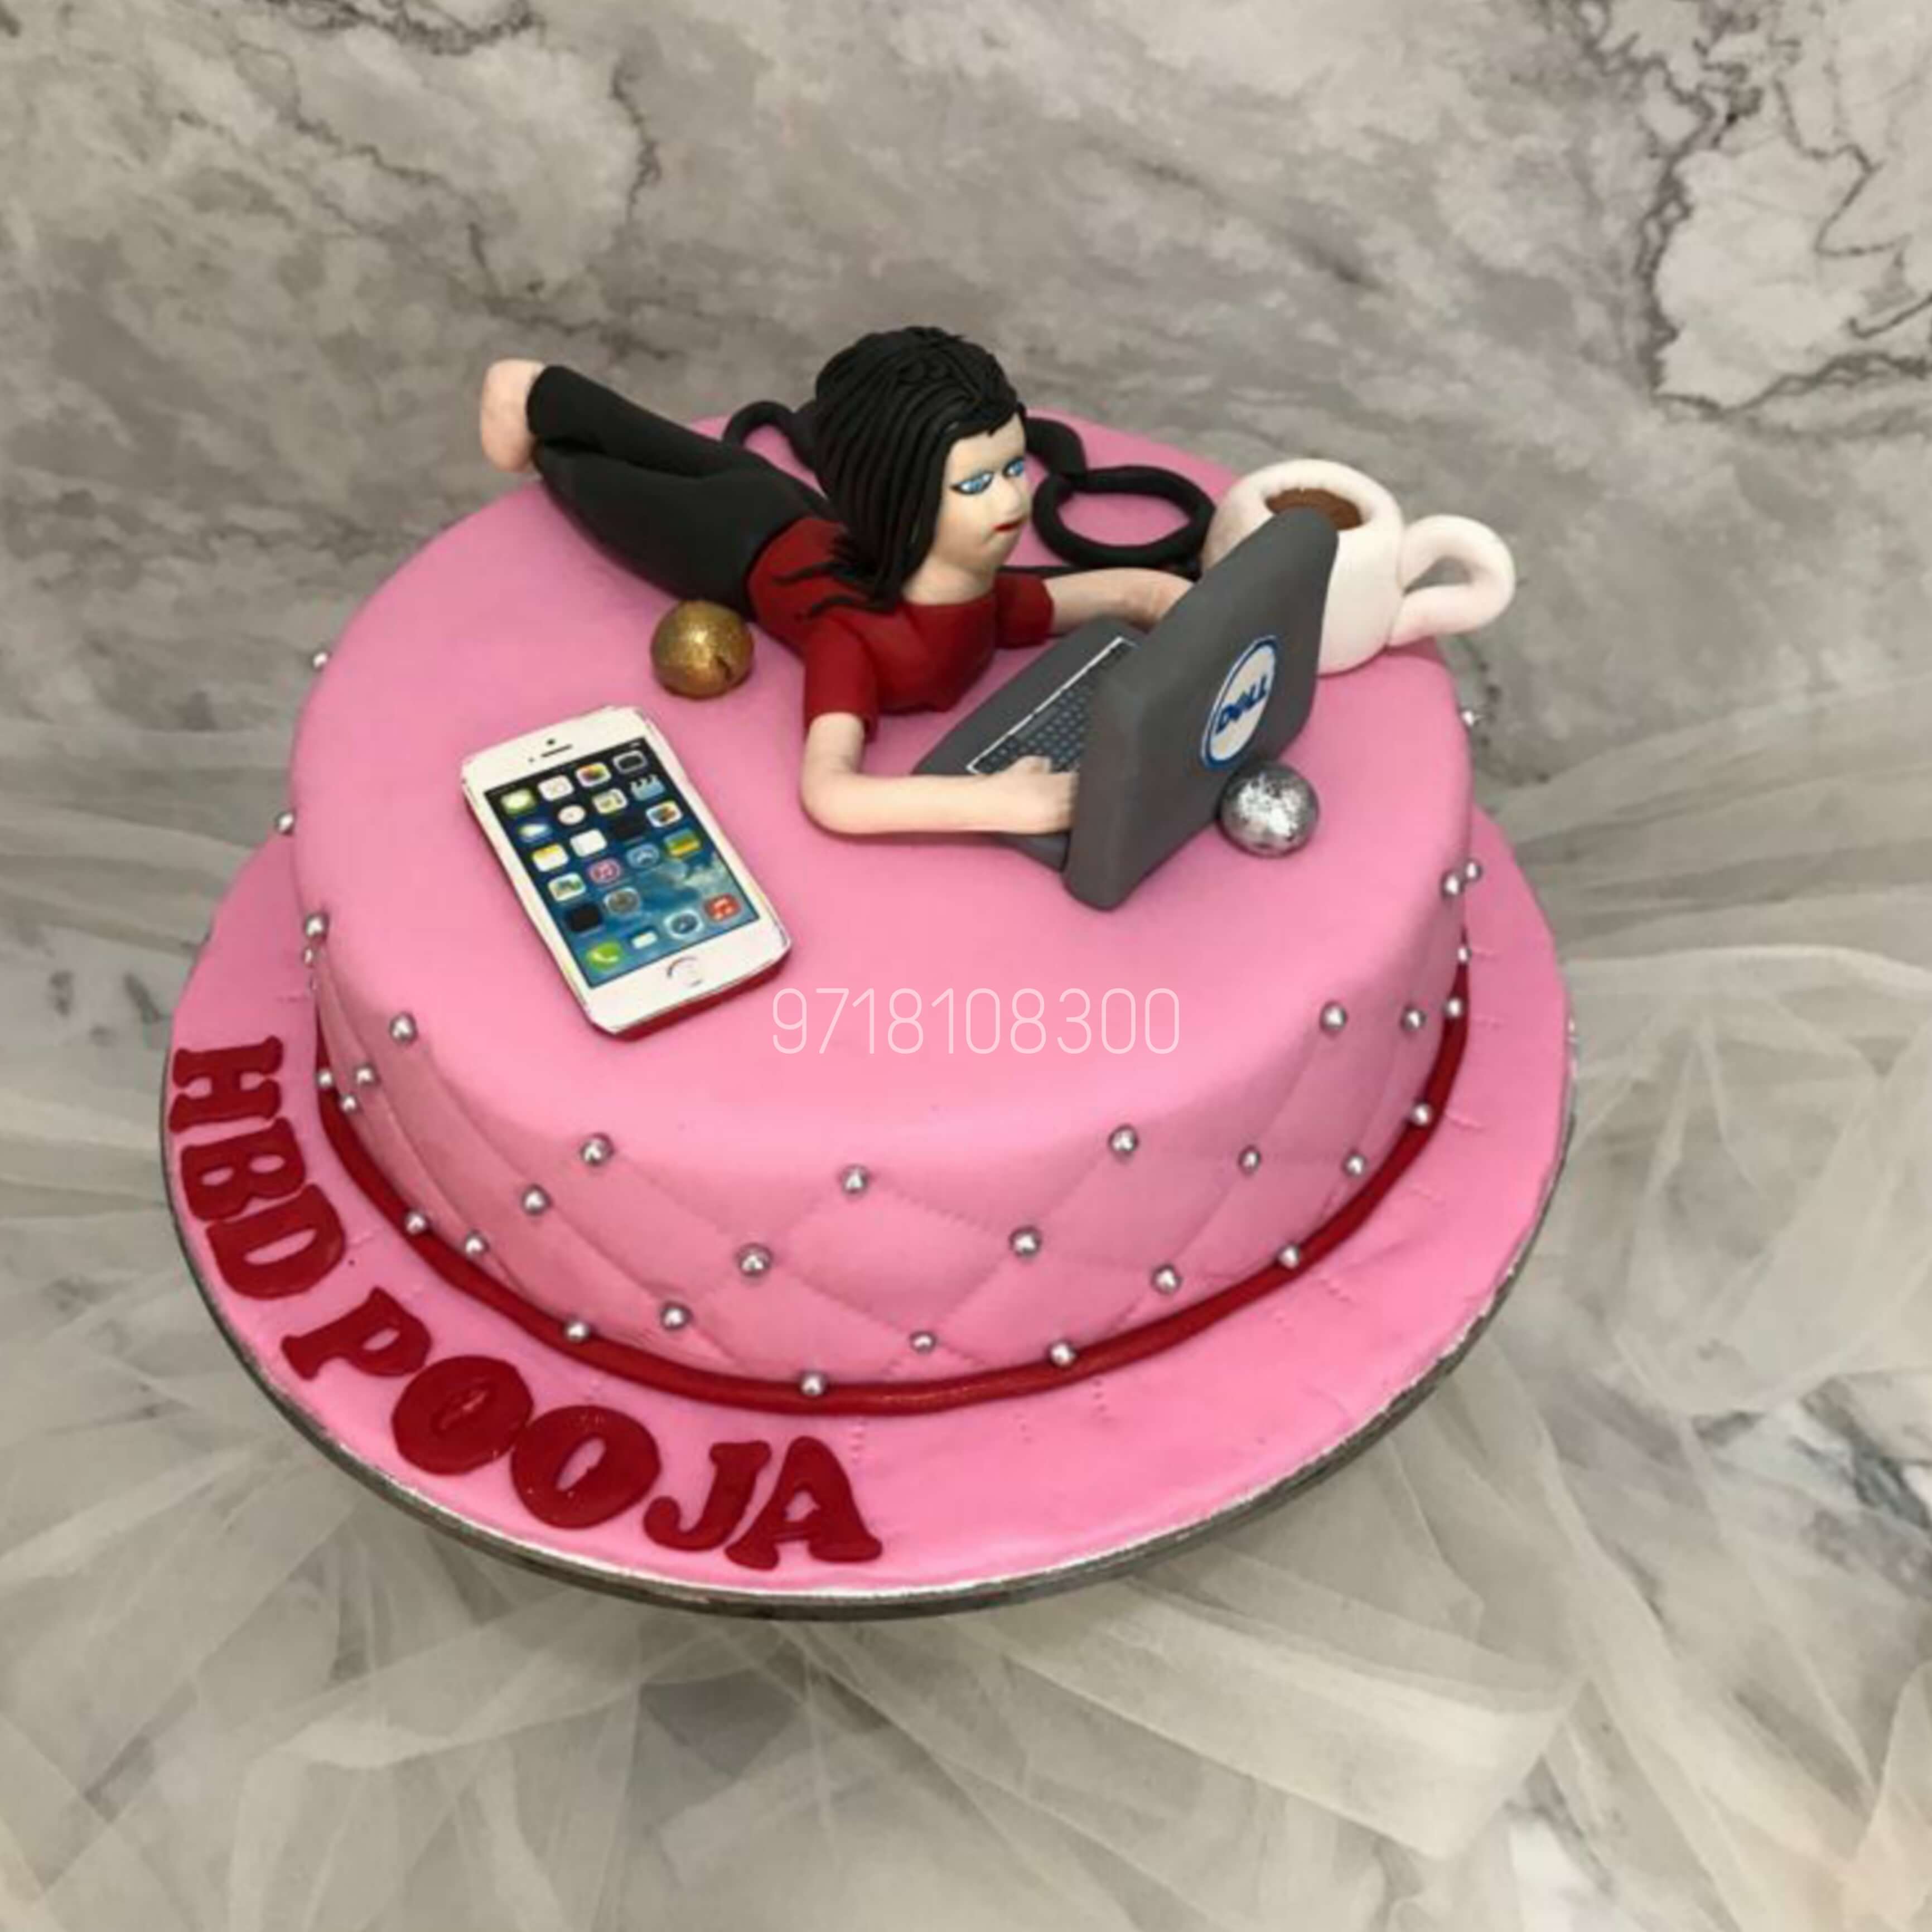 Happy 18th Birthday Age Birthday Cake Topper Cake Decoration Party  Celebration Boy Girl / Express Postage - Etsy Norway